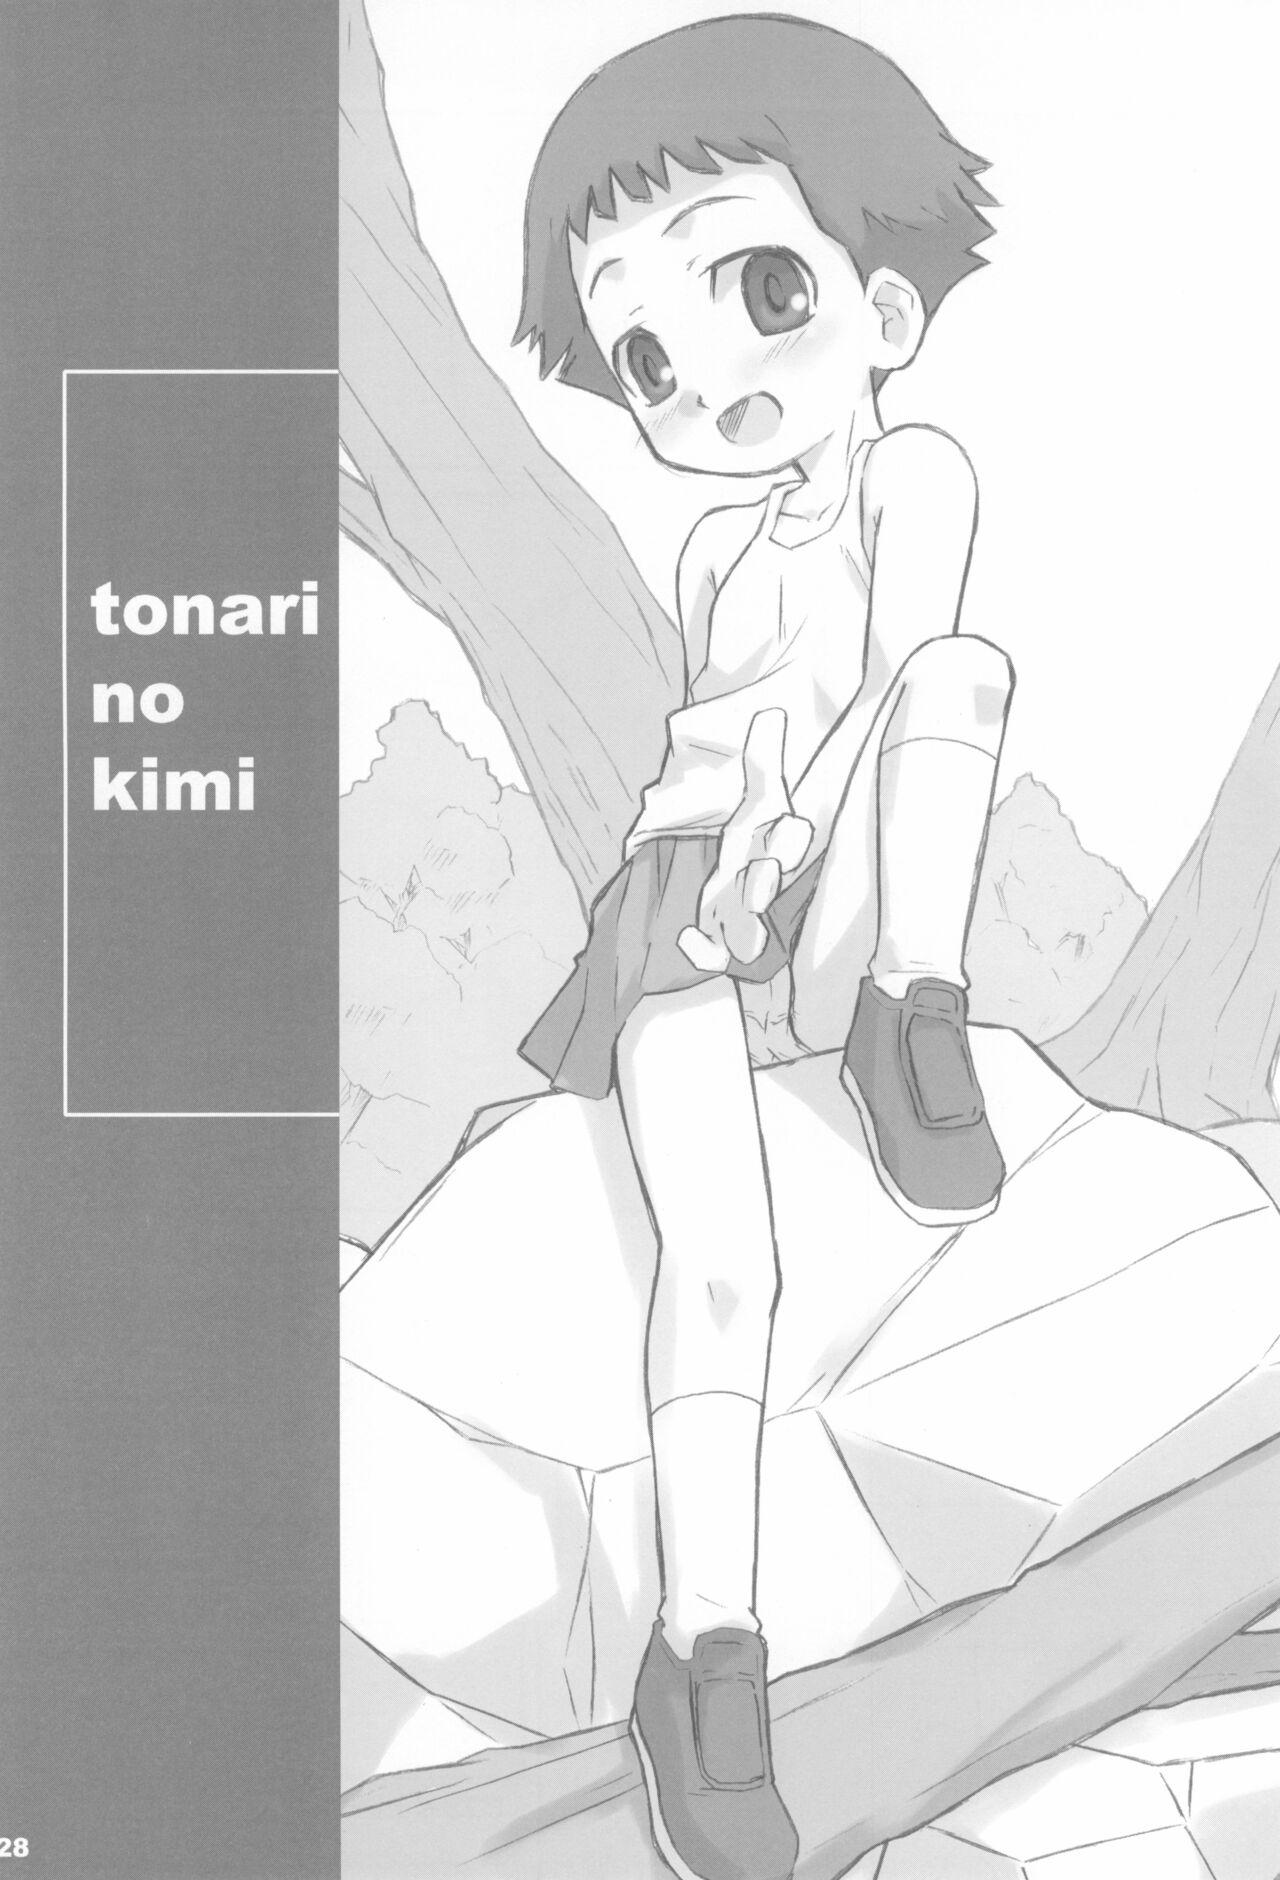 Tonari no Kimi Sotsugyou Album 27